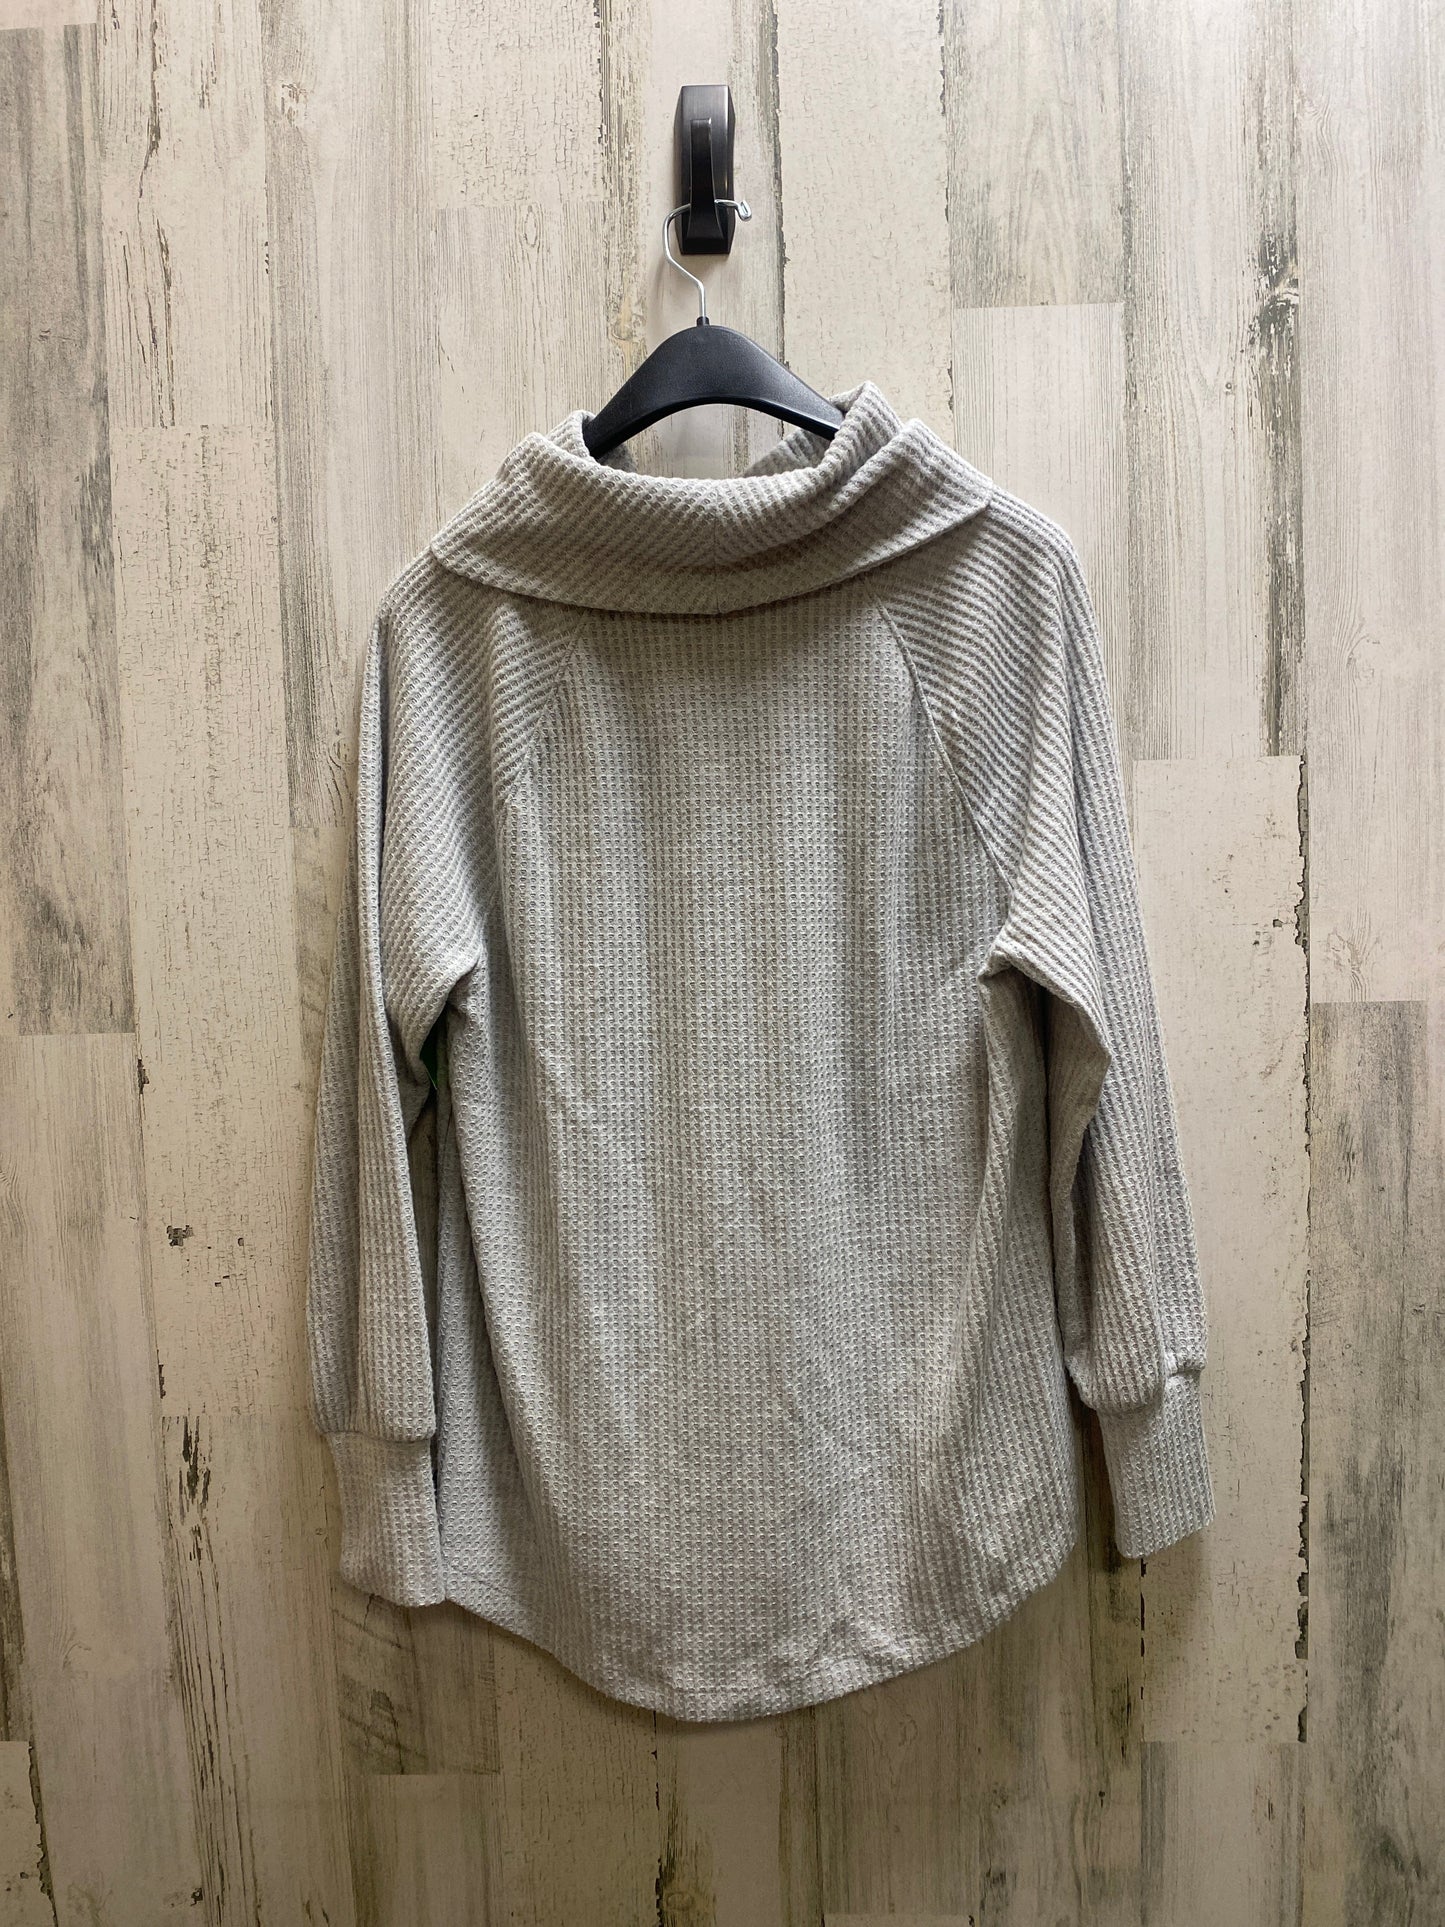 Sweater By Loft